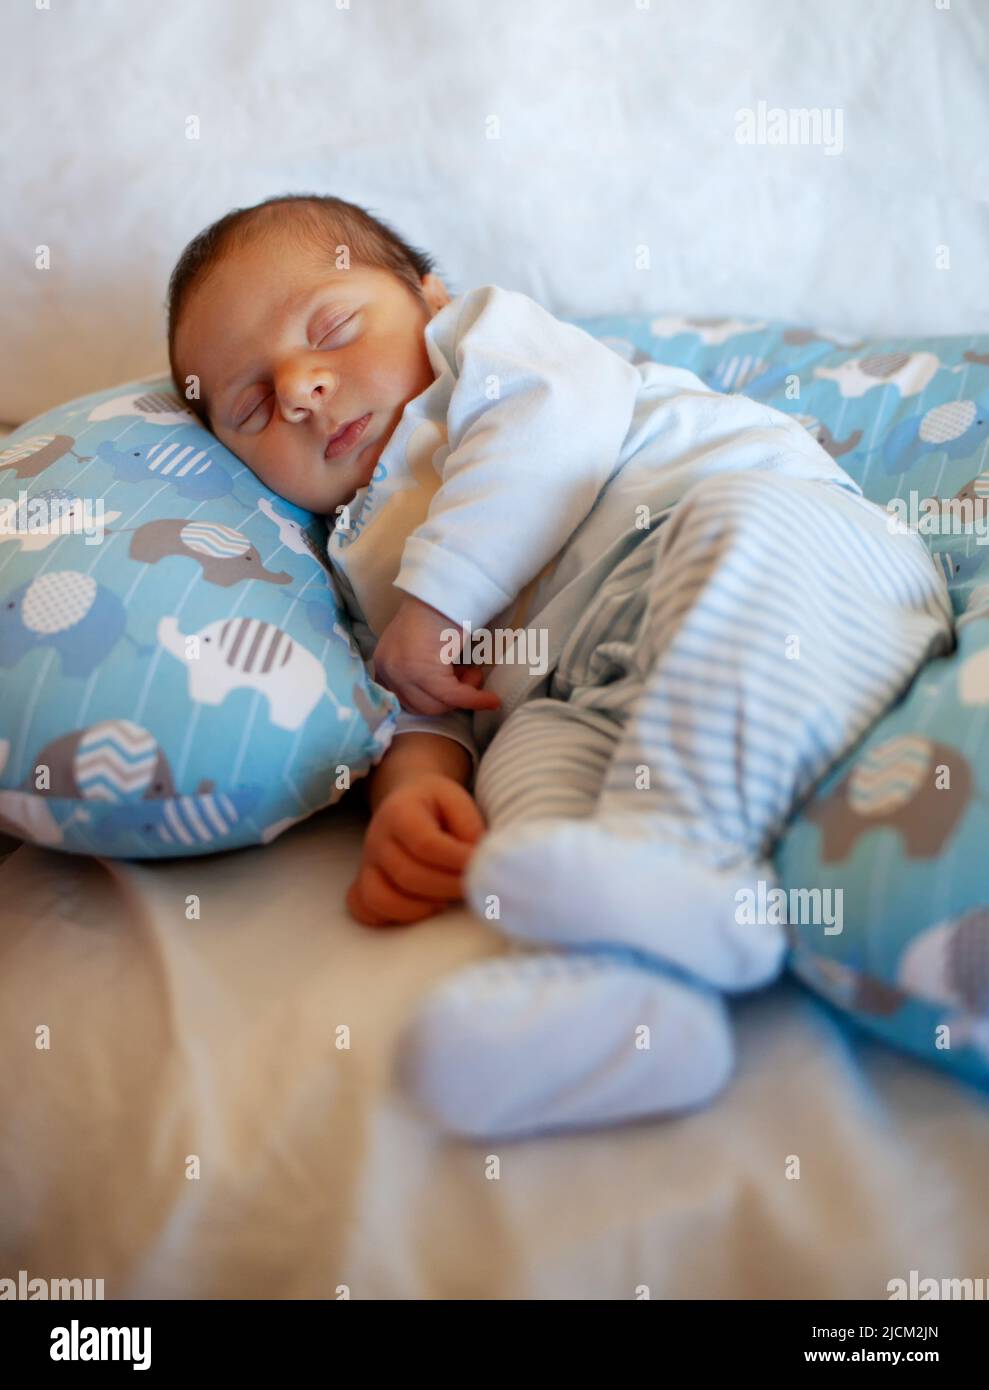 Un bebé de unos días duerme sobre una almohada redonda. La fase del sueño es muy importante en la infancia. Foto de stock